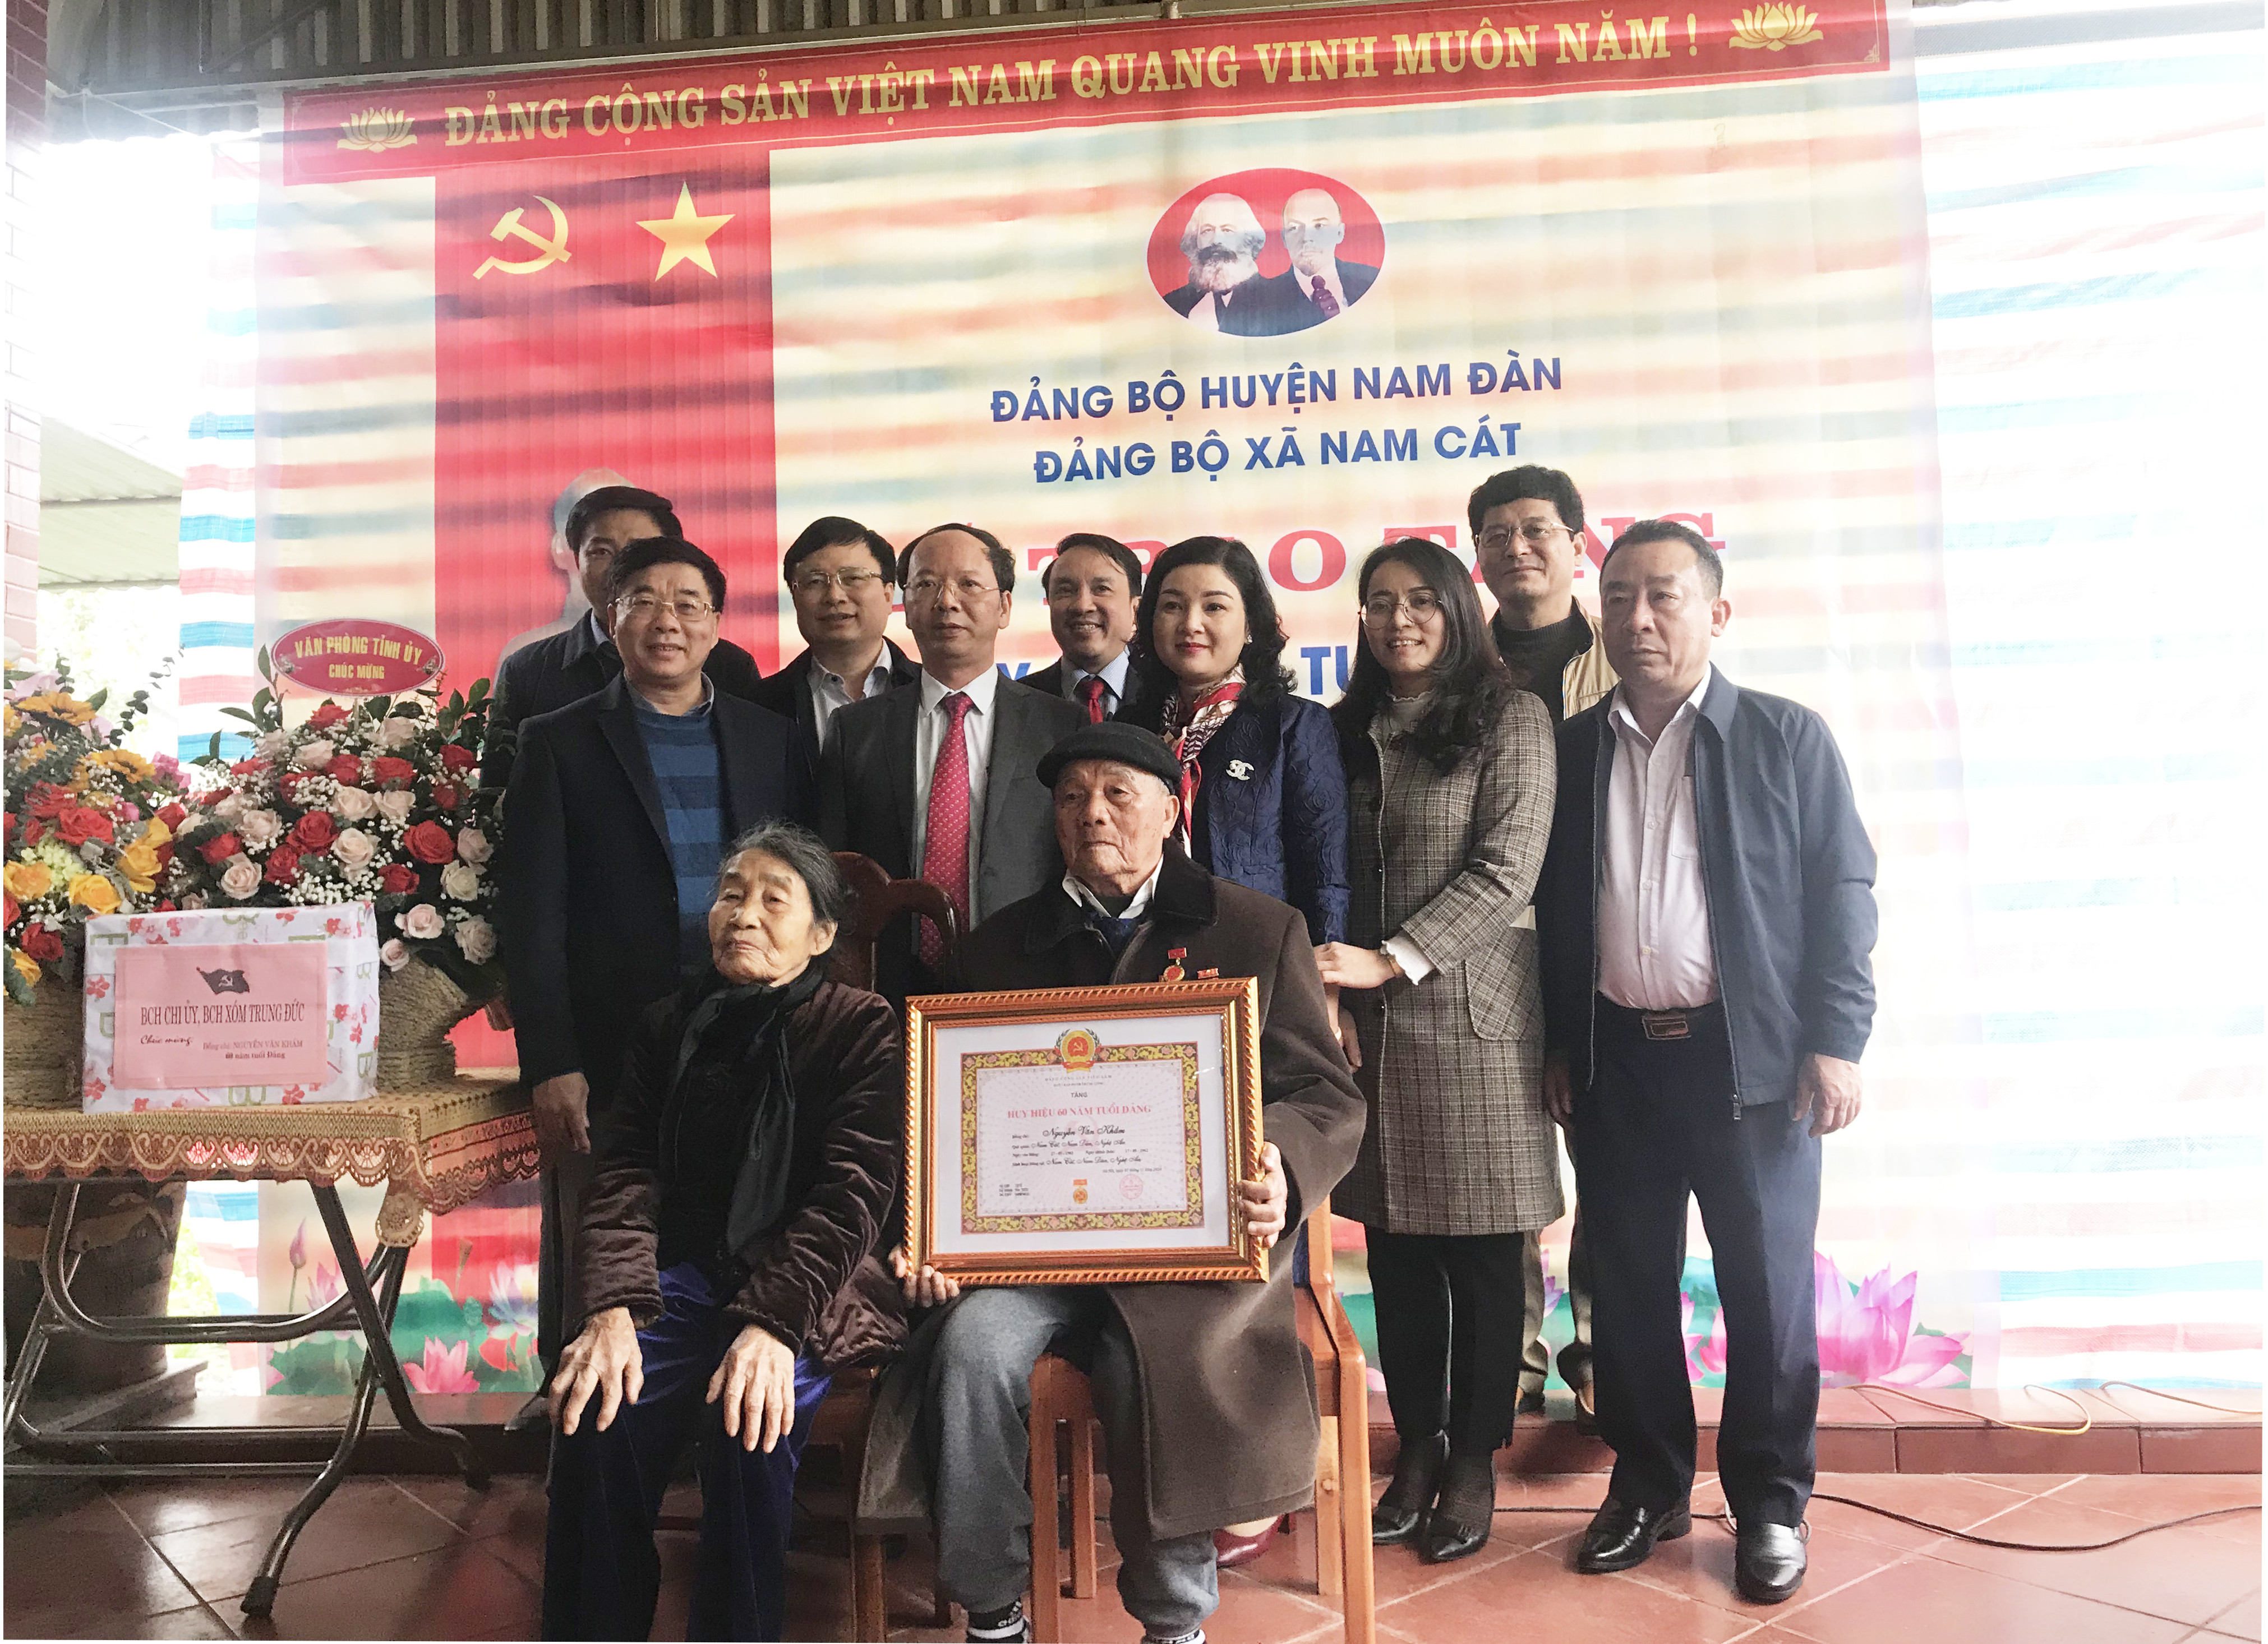 Các đồng chí lãnh đạo tỉnh chúc mừng đồng chí Nguyễn Văn Khầm tròn 60 năm tuổi Đảng